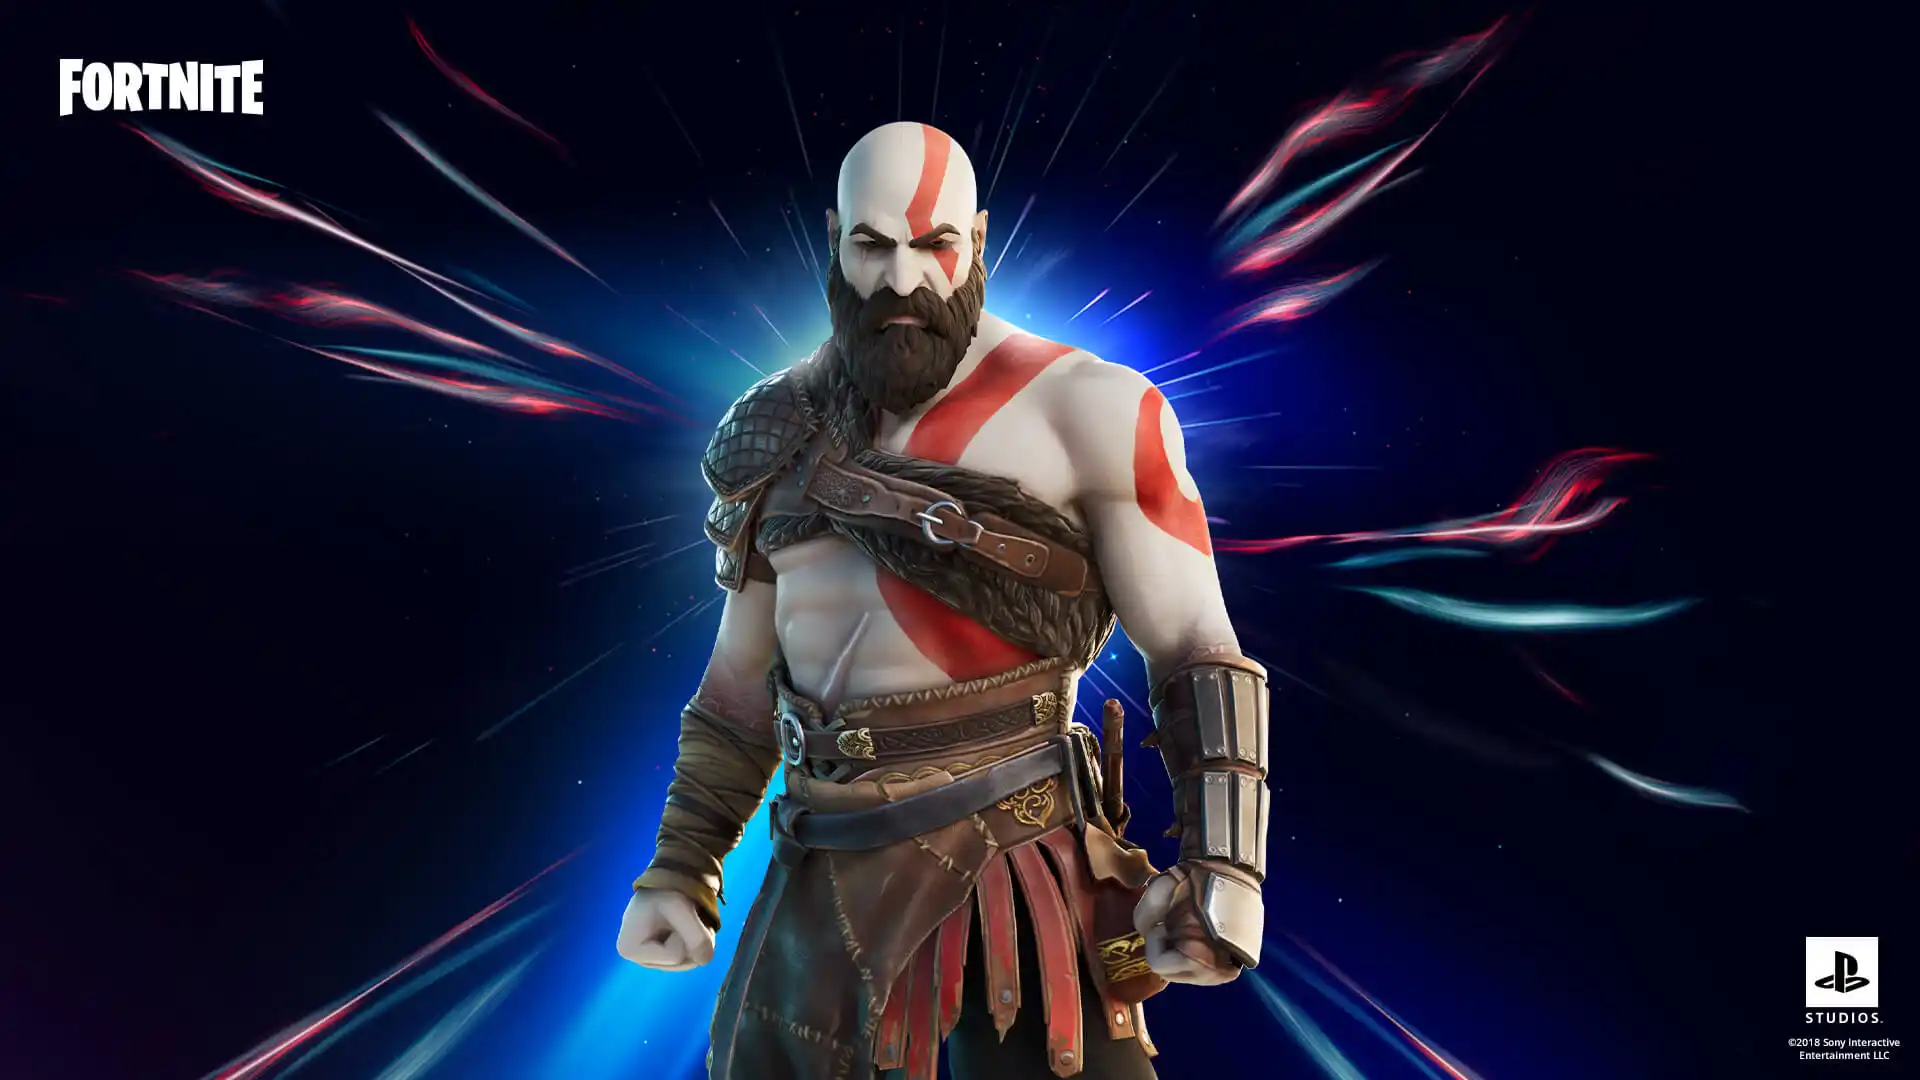 Para quem está acostumado a lutar contra deuses gregos e nórdicos, uma vitória vai ser moleza no Fortnite com a skin do Kratos (Foto: Epic Games)